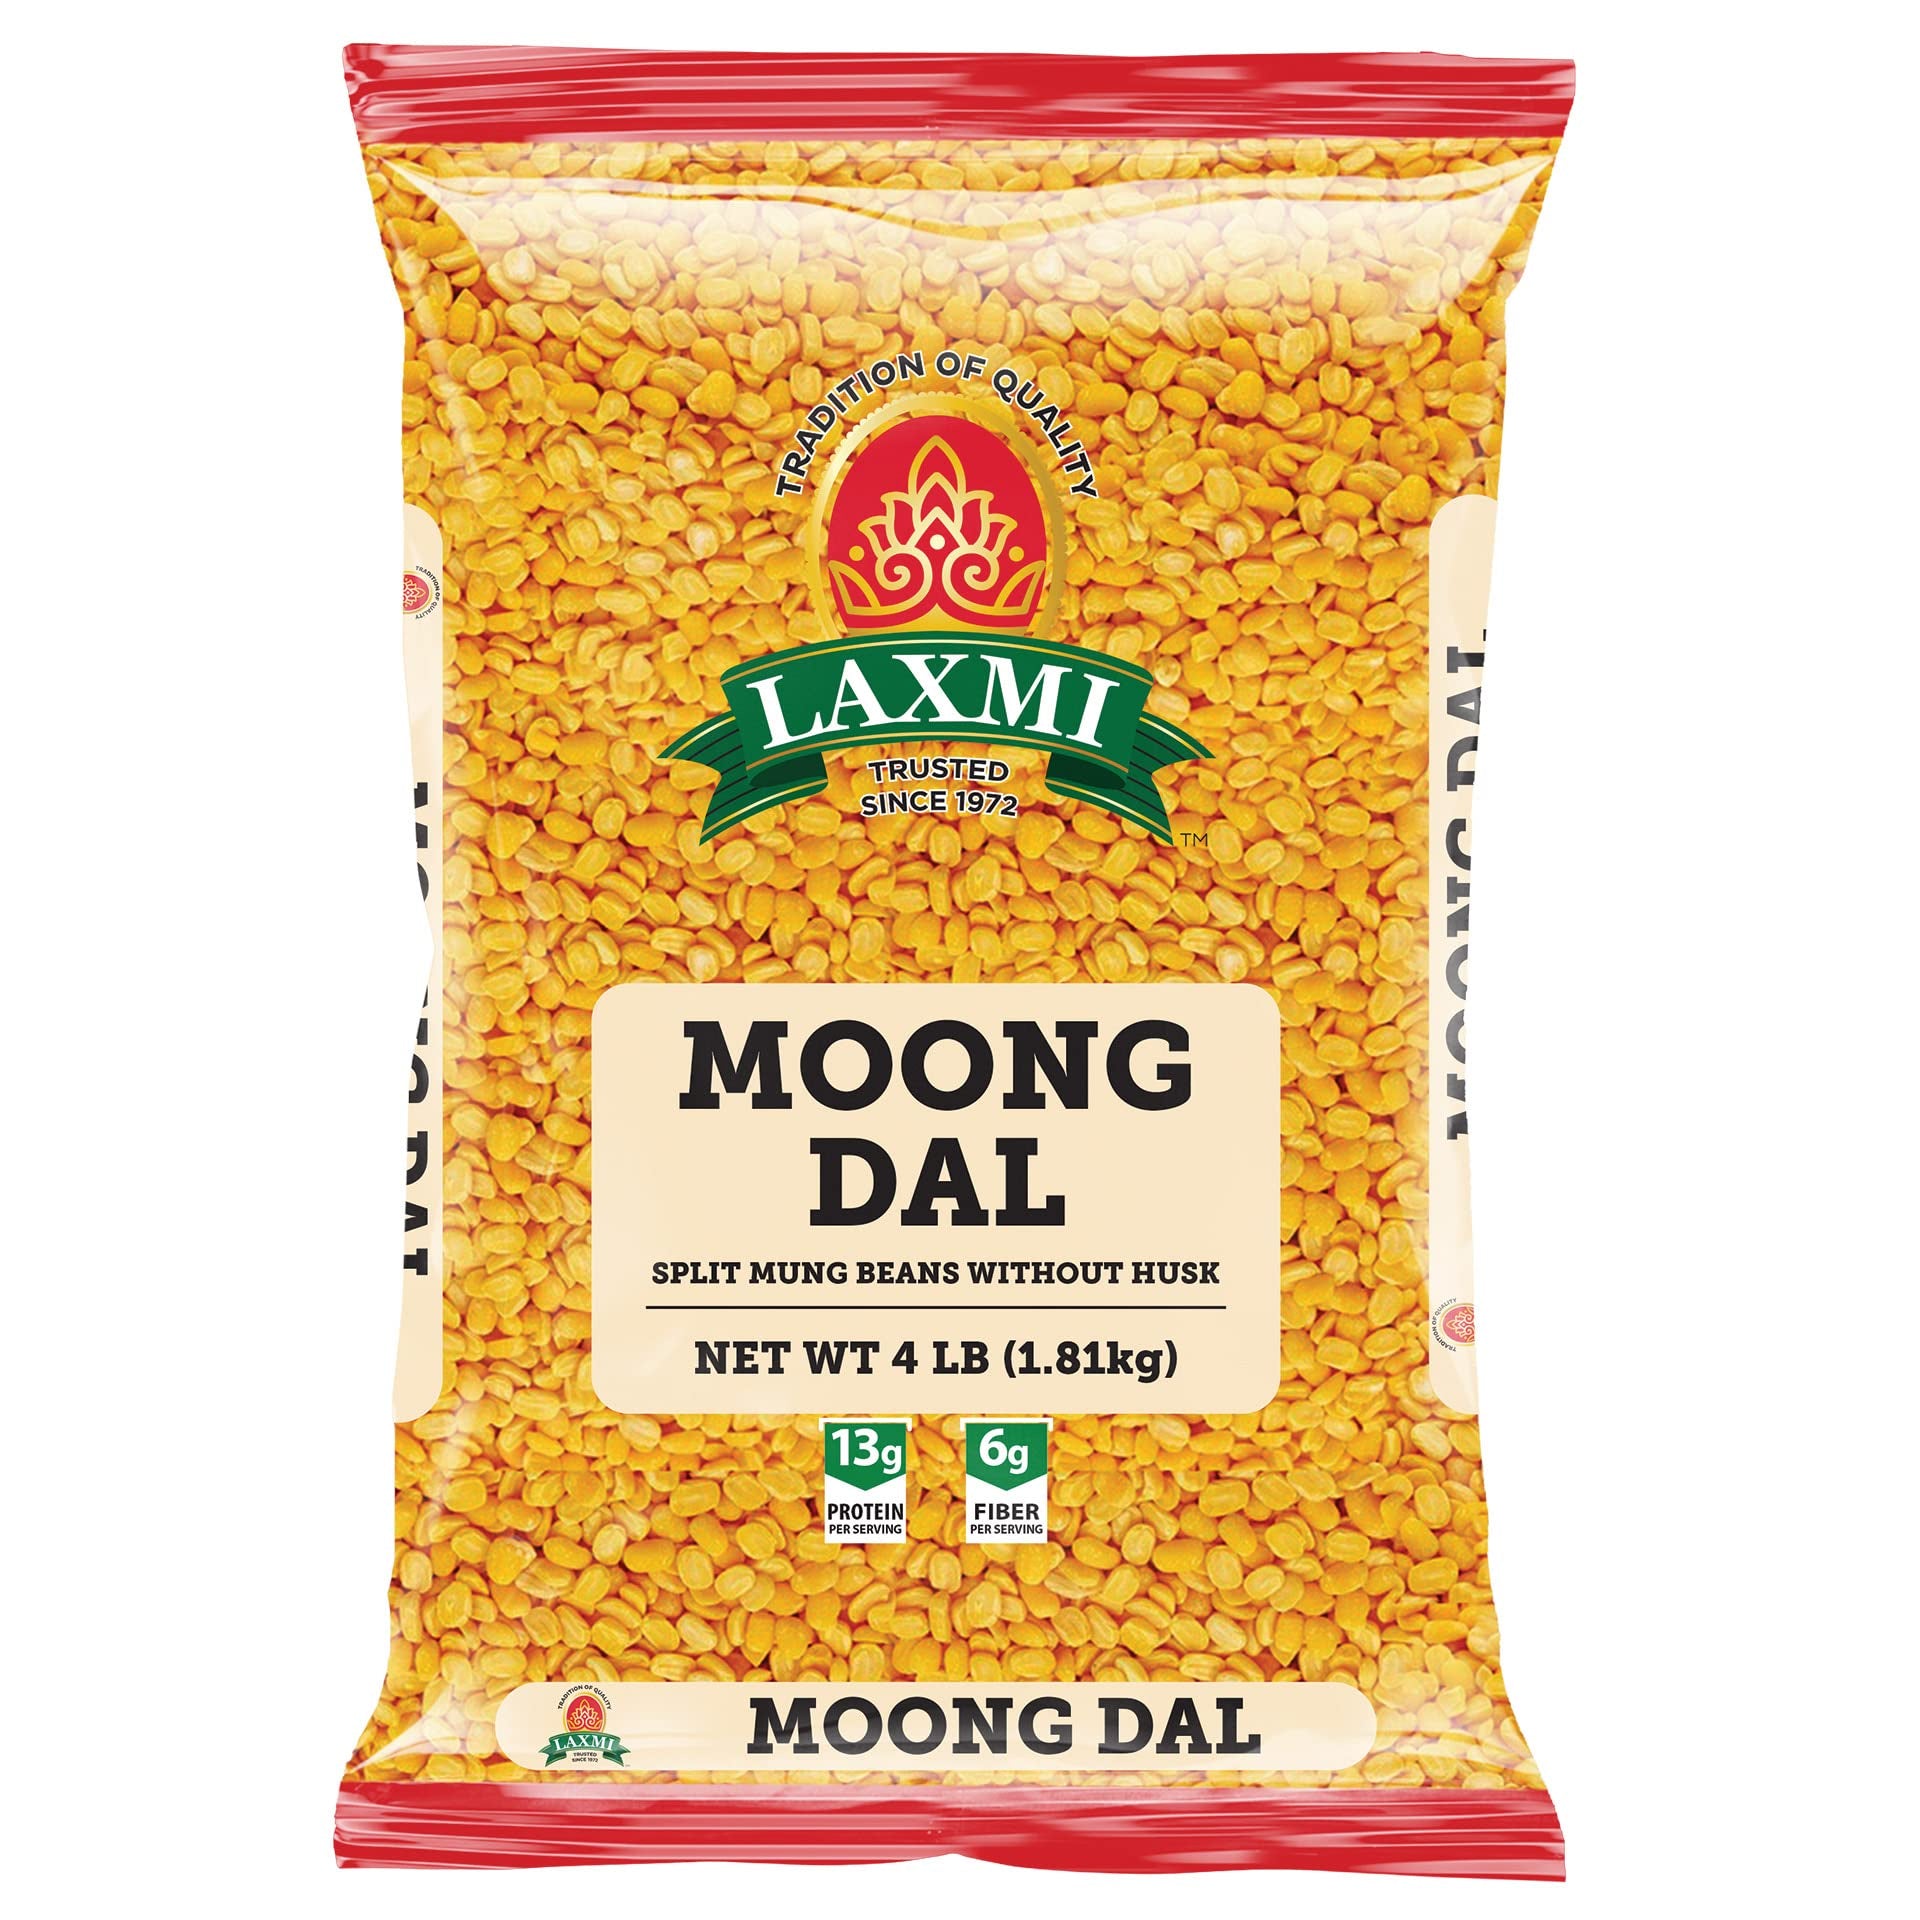 Laxmi - Moong Daal 4lb